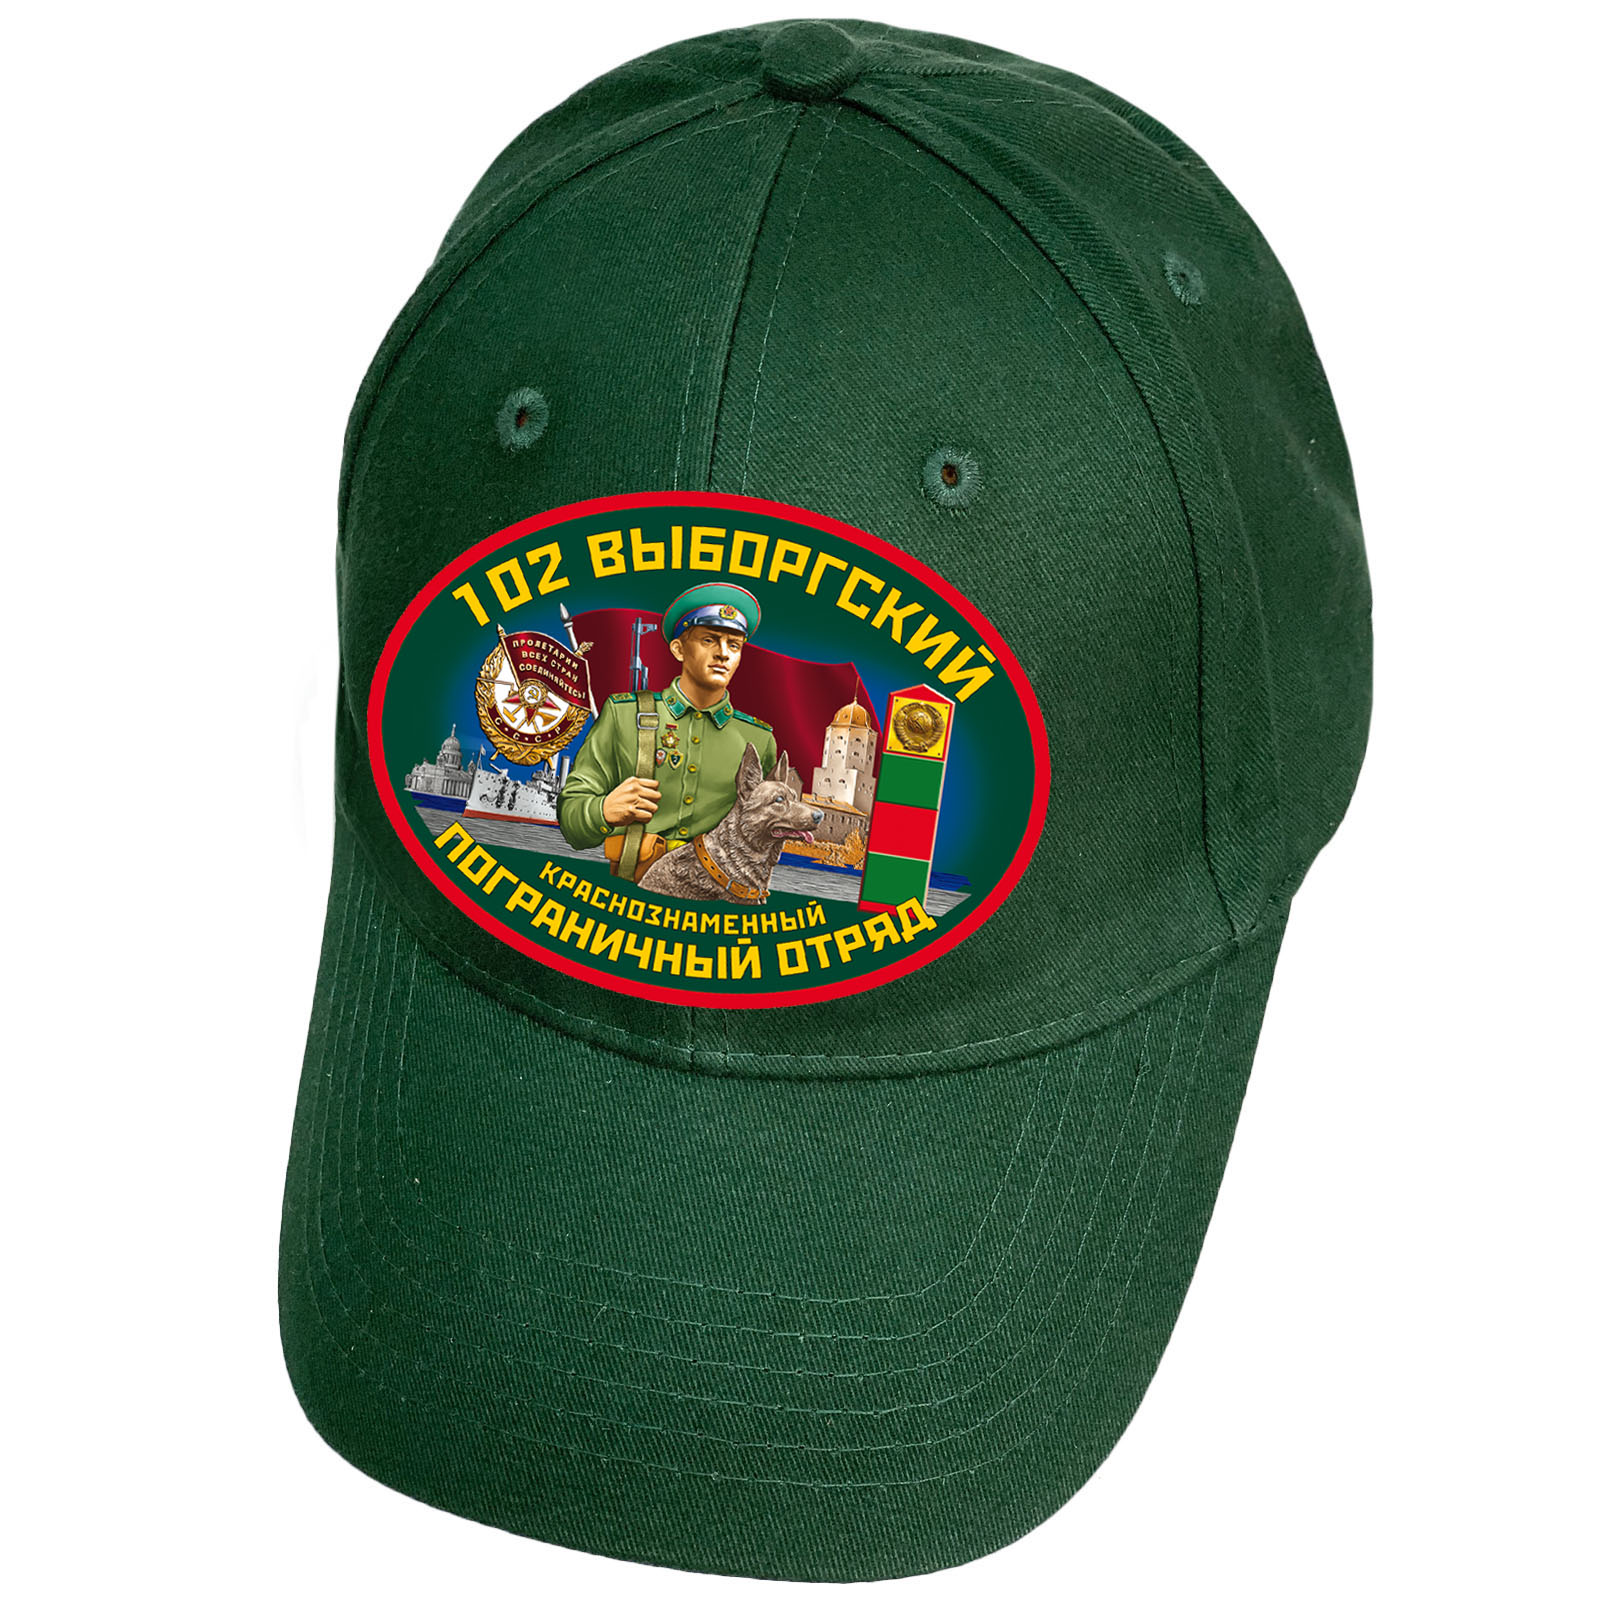 Тёмно-зелёная кепка "102 Выборгский пограничный отряд"